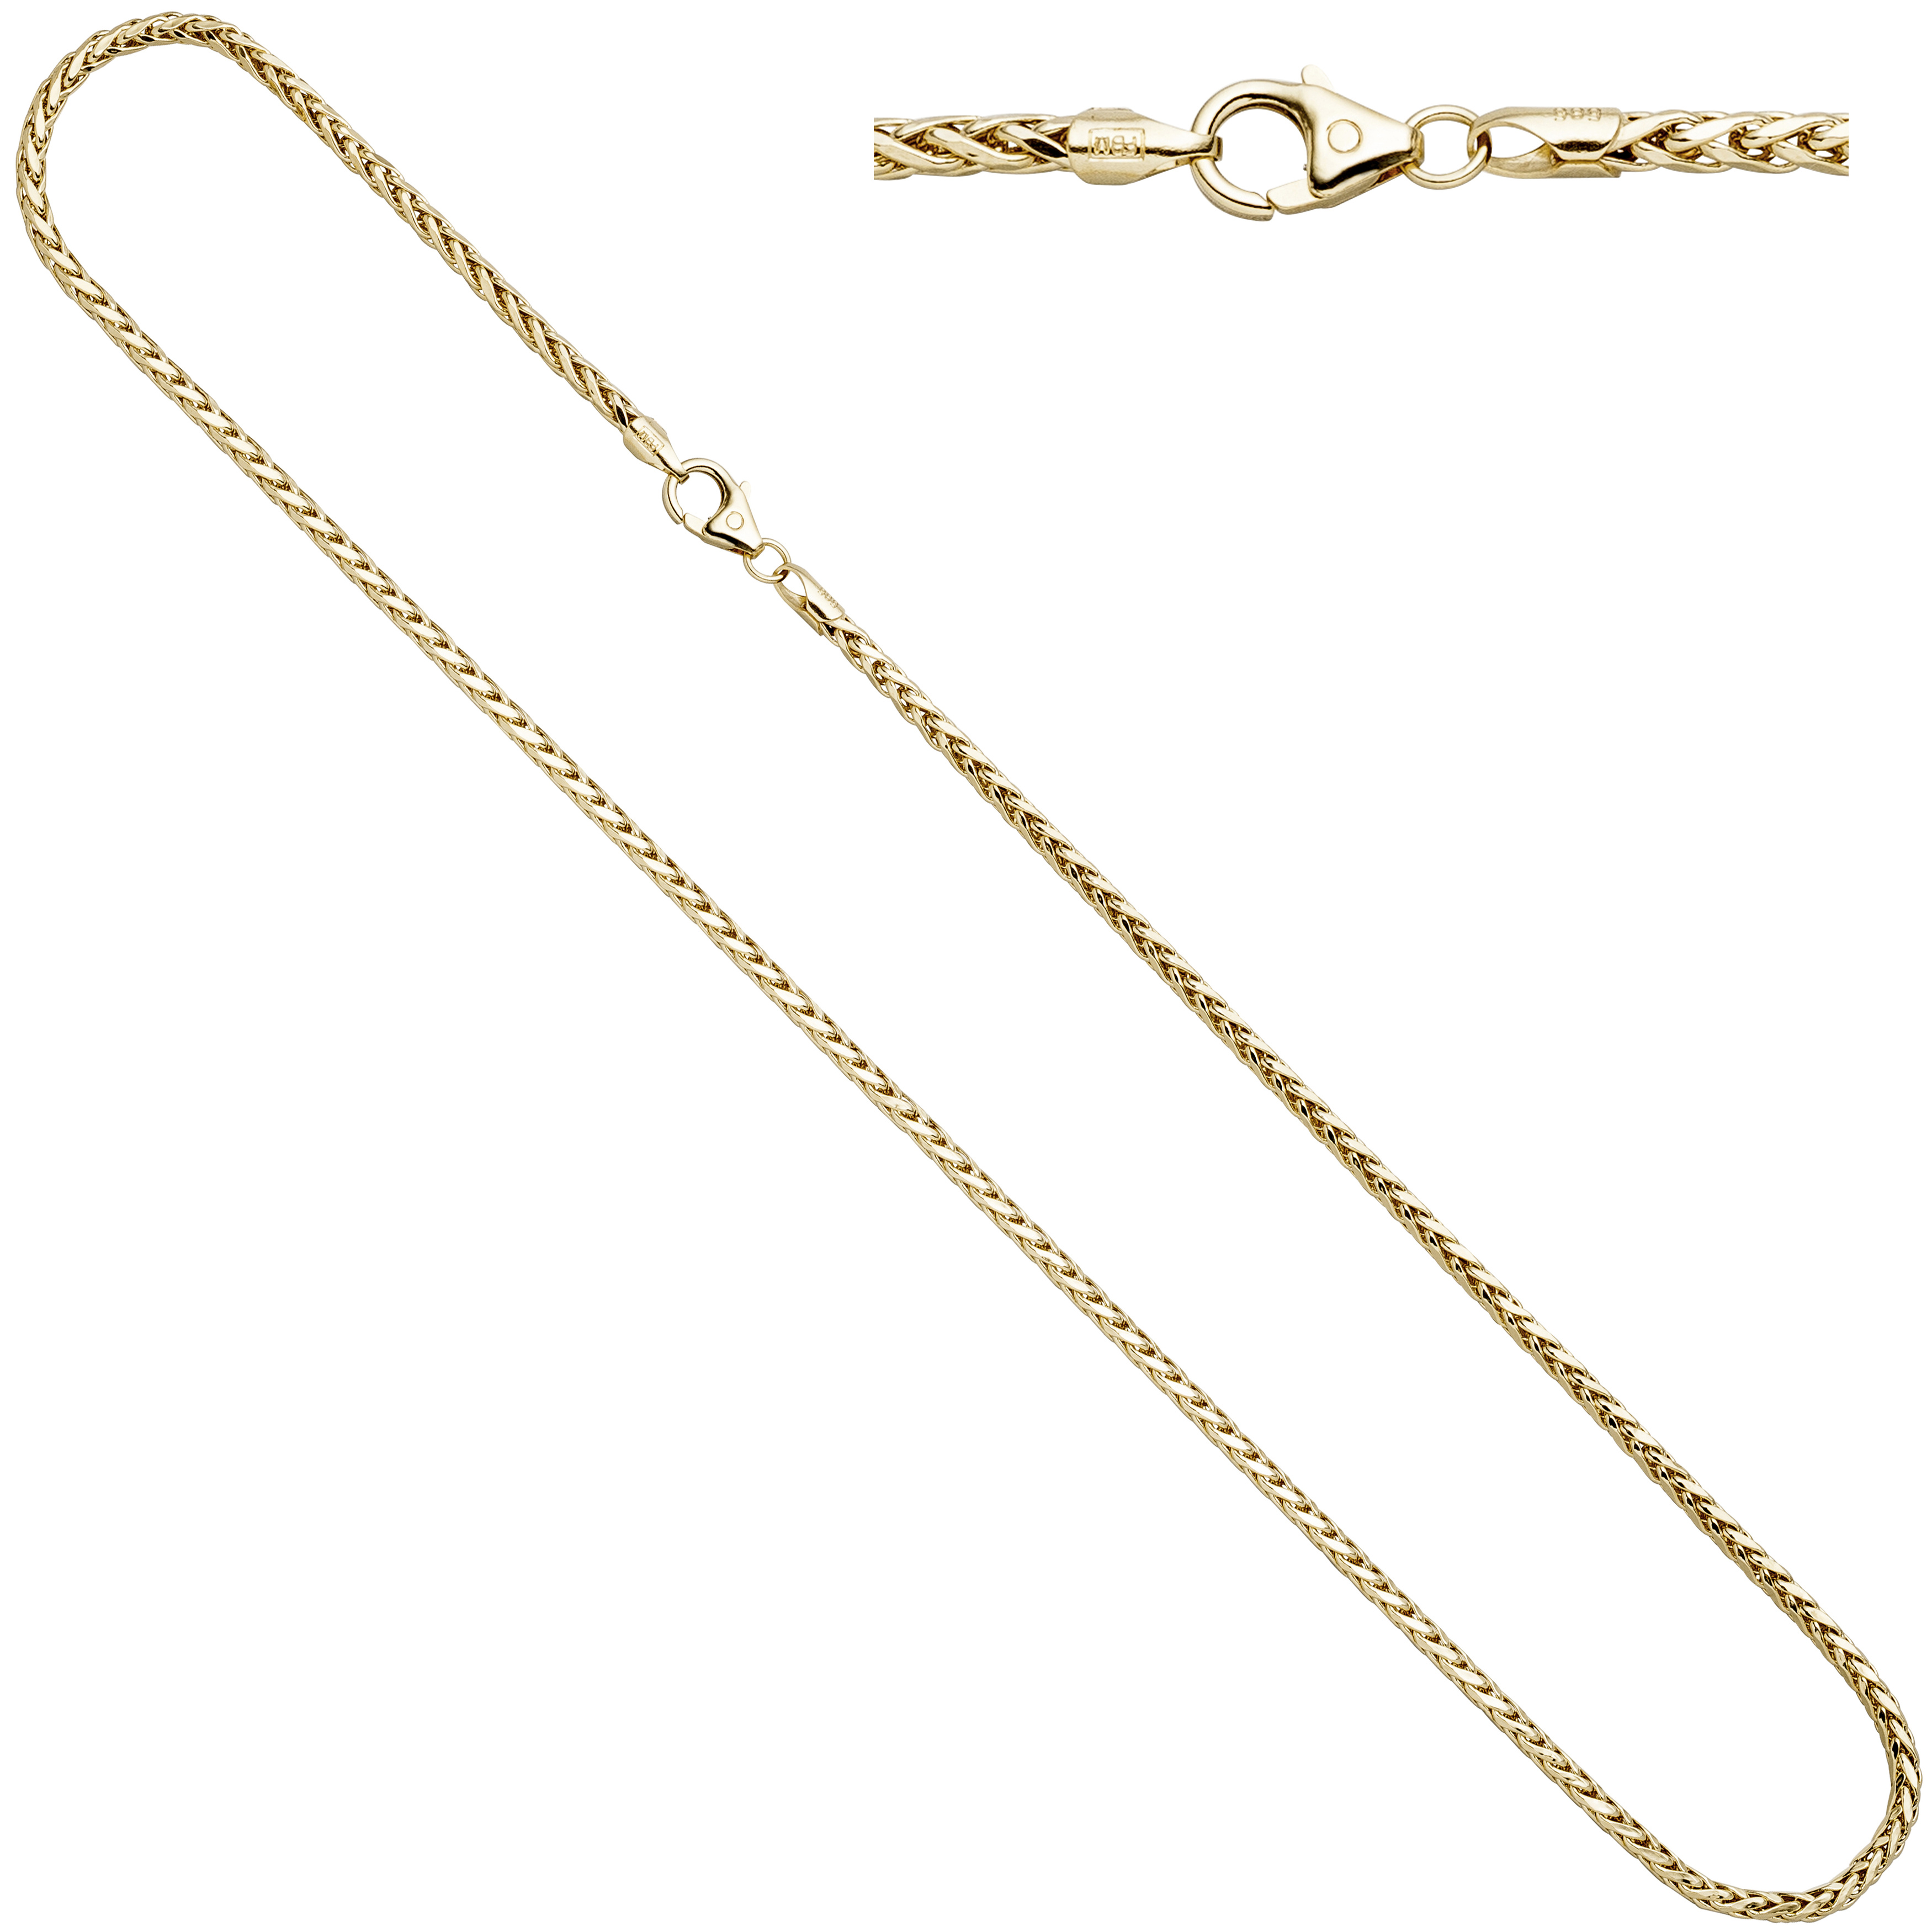 Zopfkette 585 Gelbgold 45 cm Gold Kette Halskette Karabiner